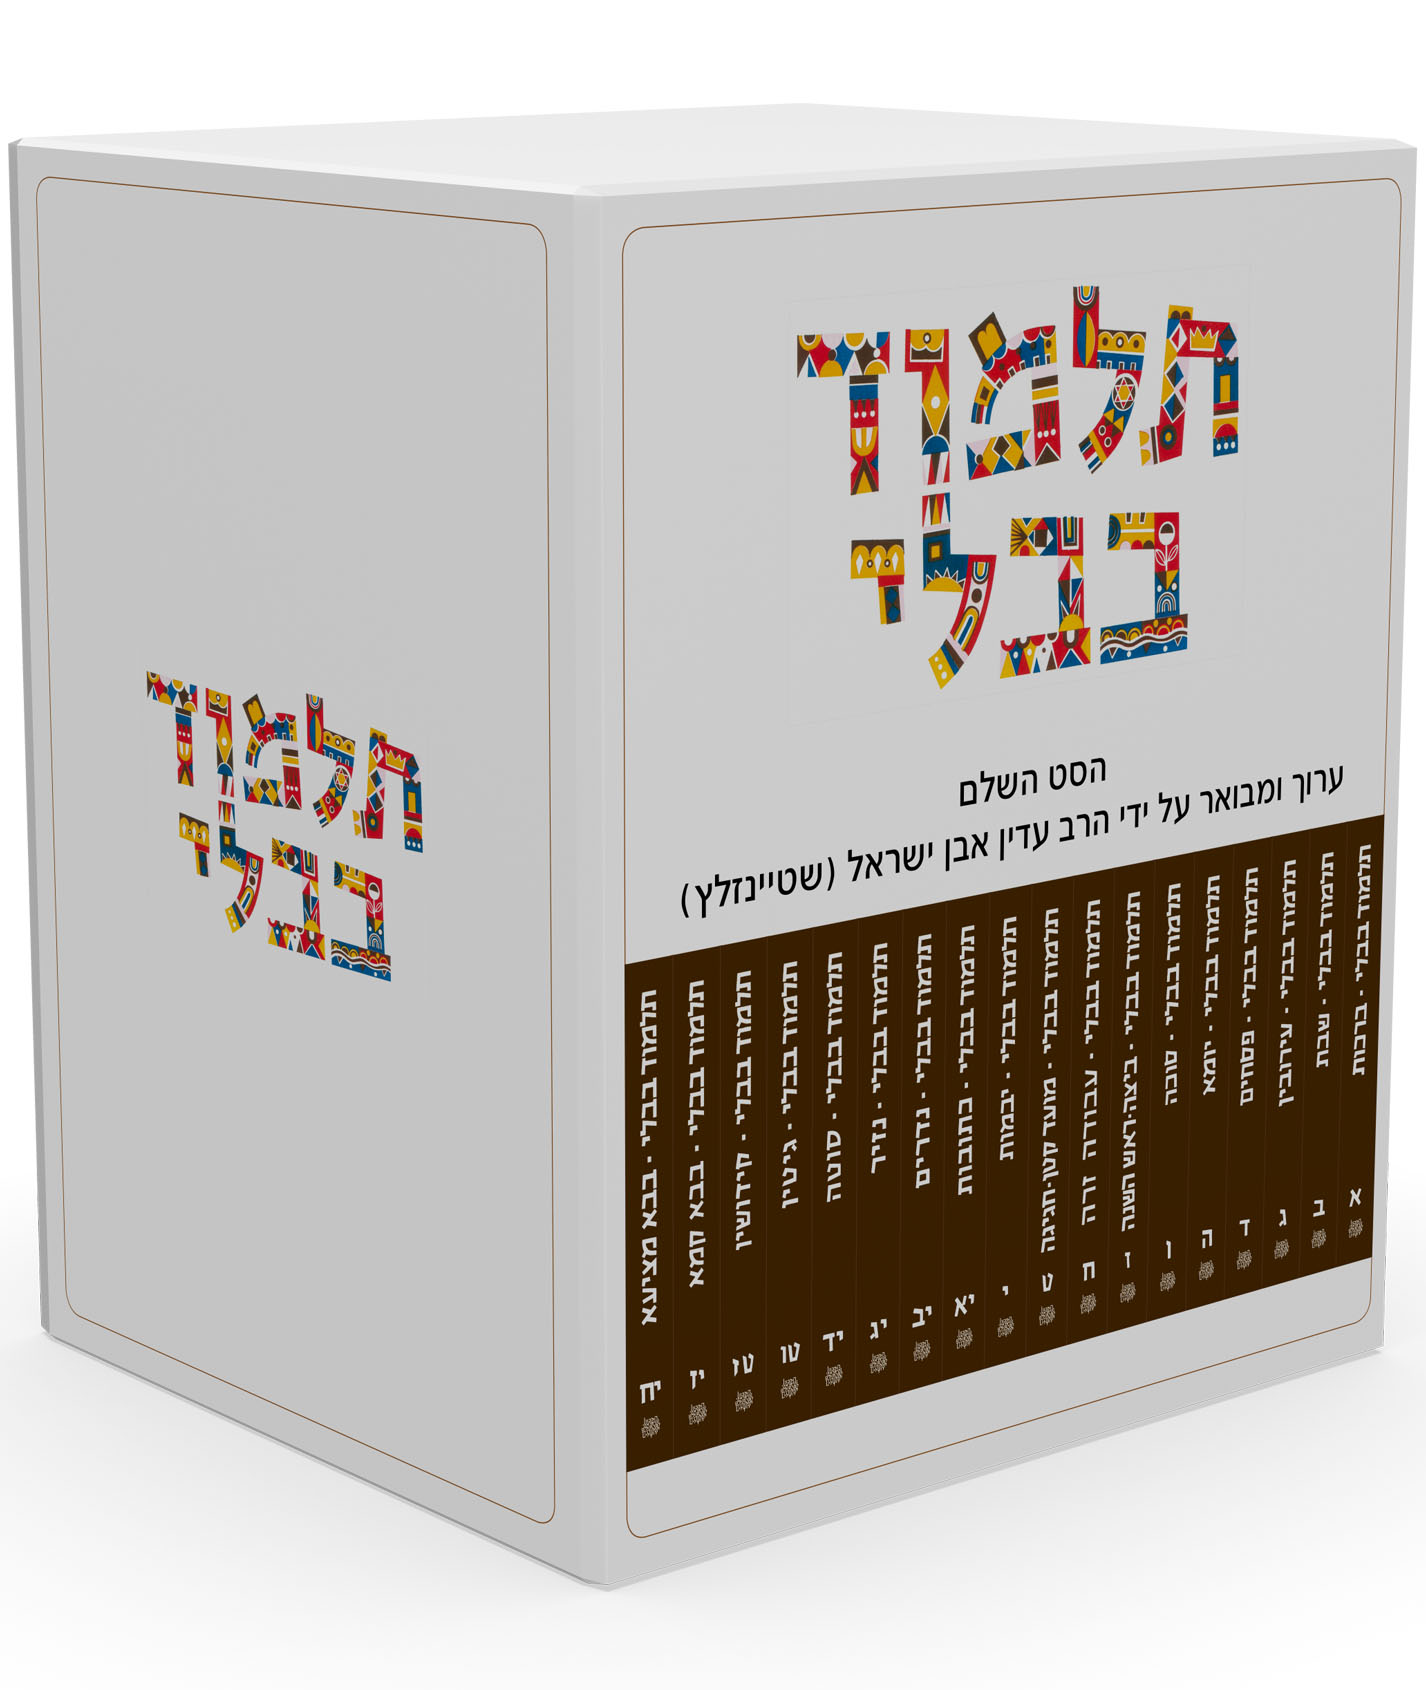 תלמוד שטיינזלץ השלם מהדורה קטנה 29 כרכים